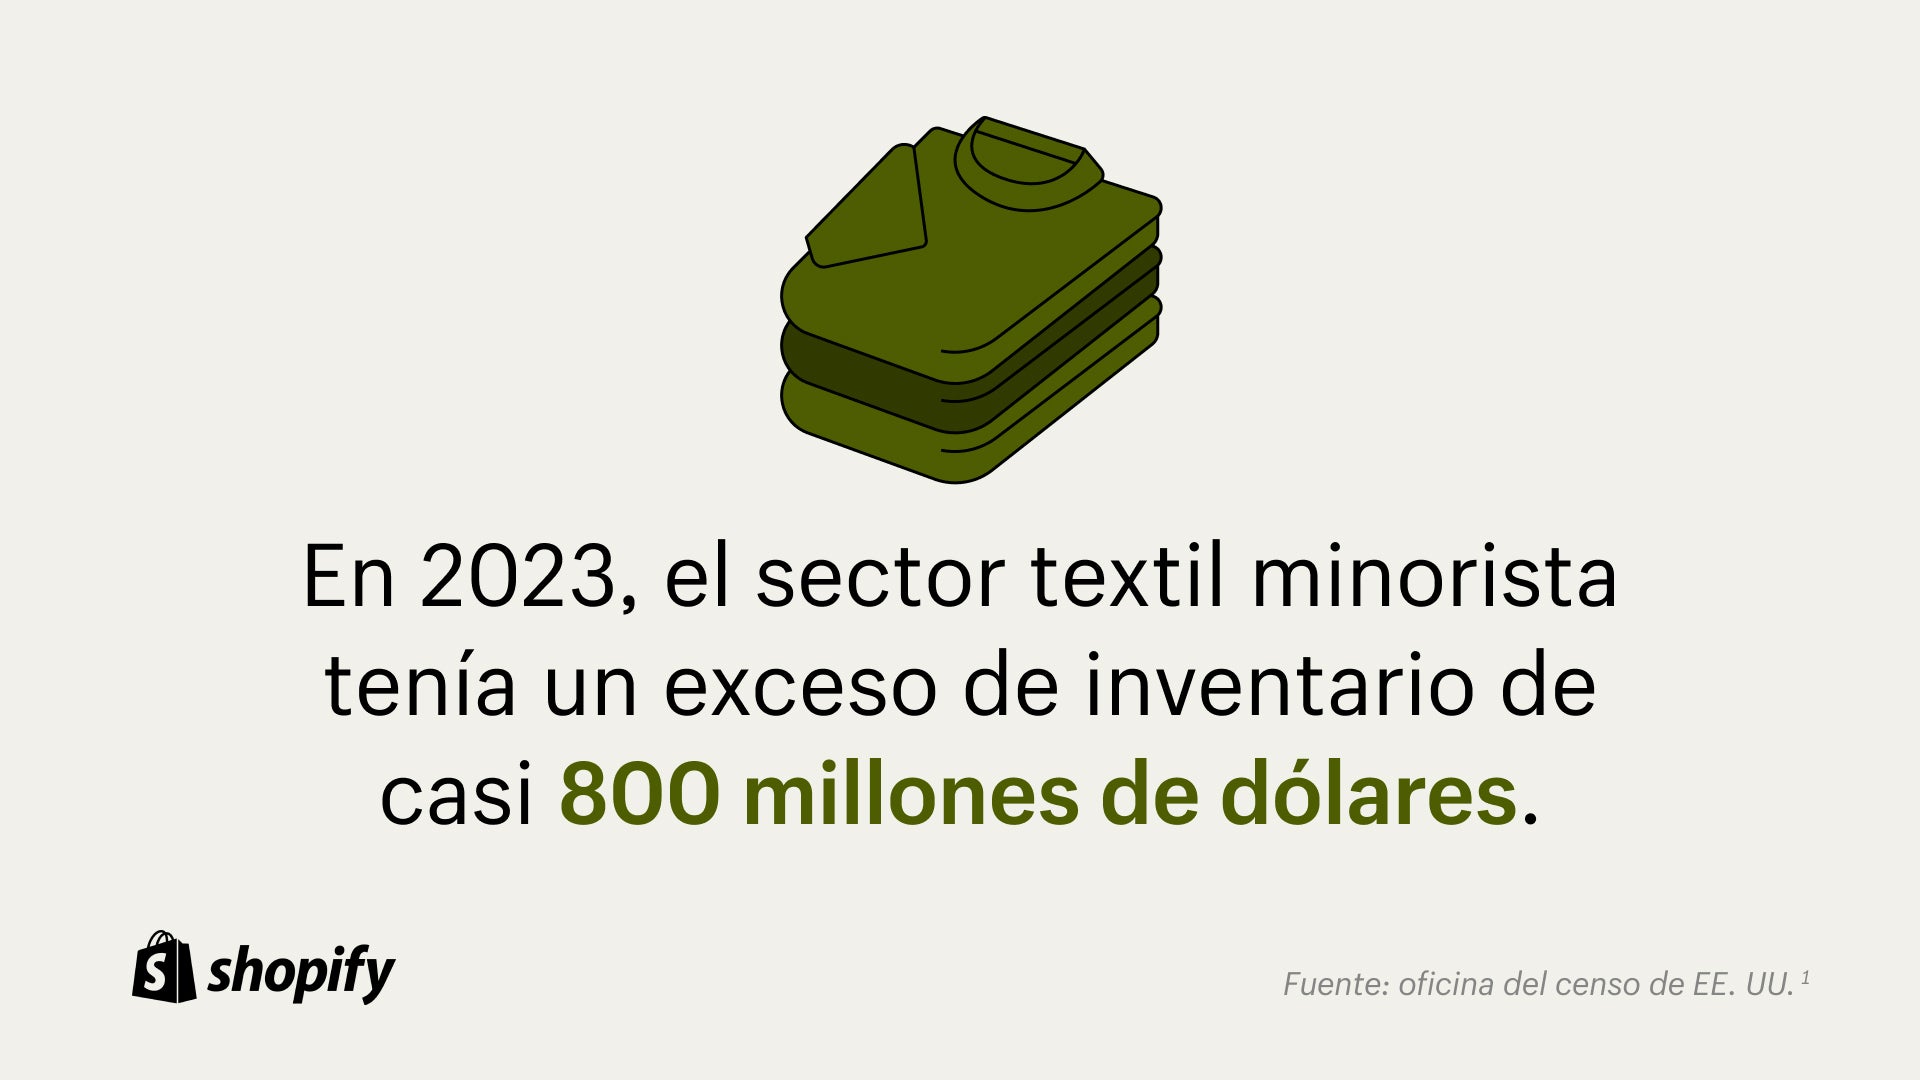 Fondo beige con una imagen de dibujos animados de camisas verdes dobladas con un dato debajo que dice: "En 20203, la industria minorista de ropa tenía casi $800 millones en exceso de inventario".